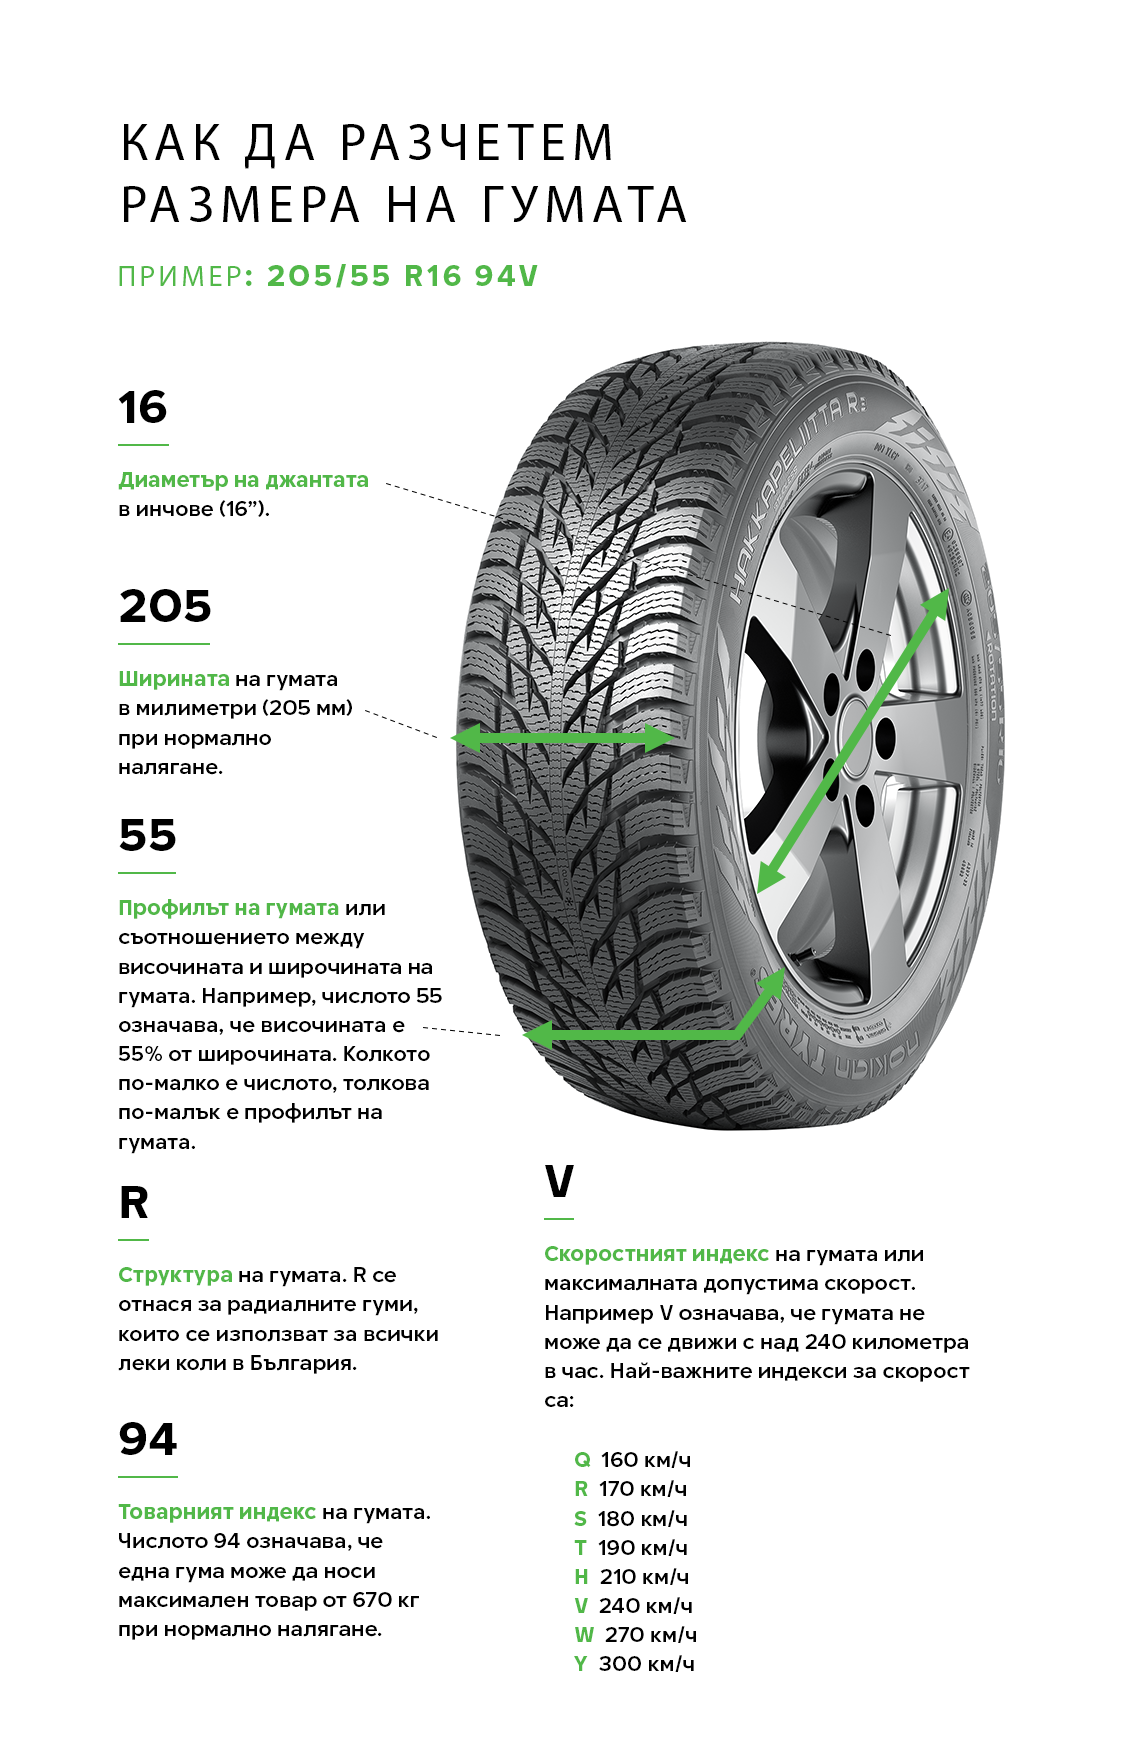 Какво ни казват маркировките на гумите?